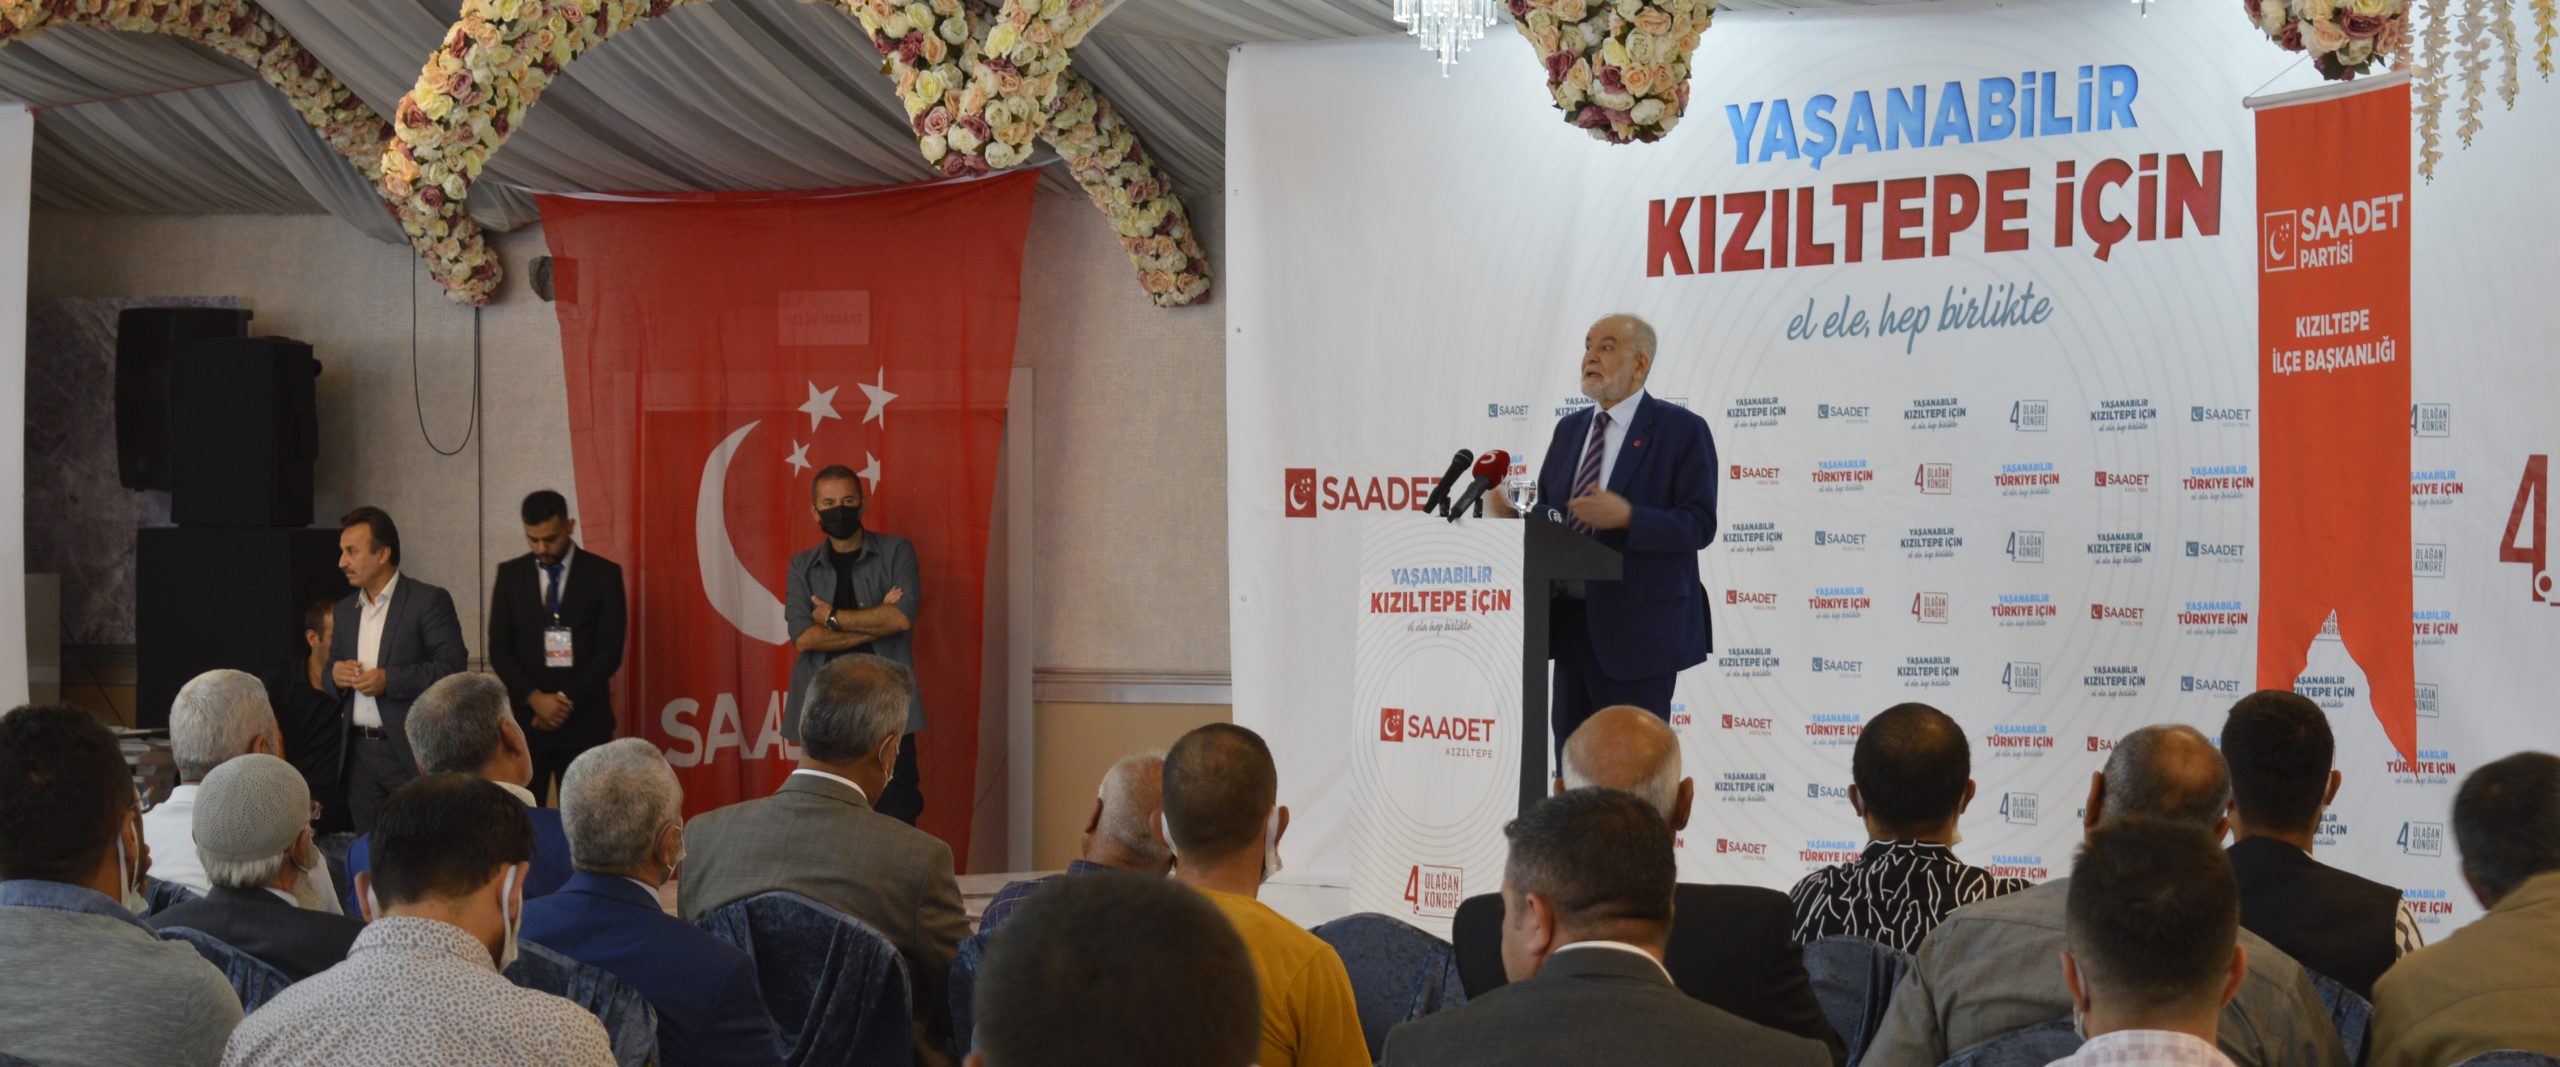 Saadet Partisi Genel Başkanı Karamollaoğlu, partisinin Kızıltepe İlçe Kongresi’ne katıldı